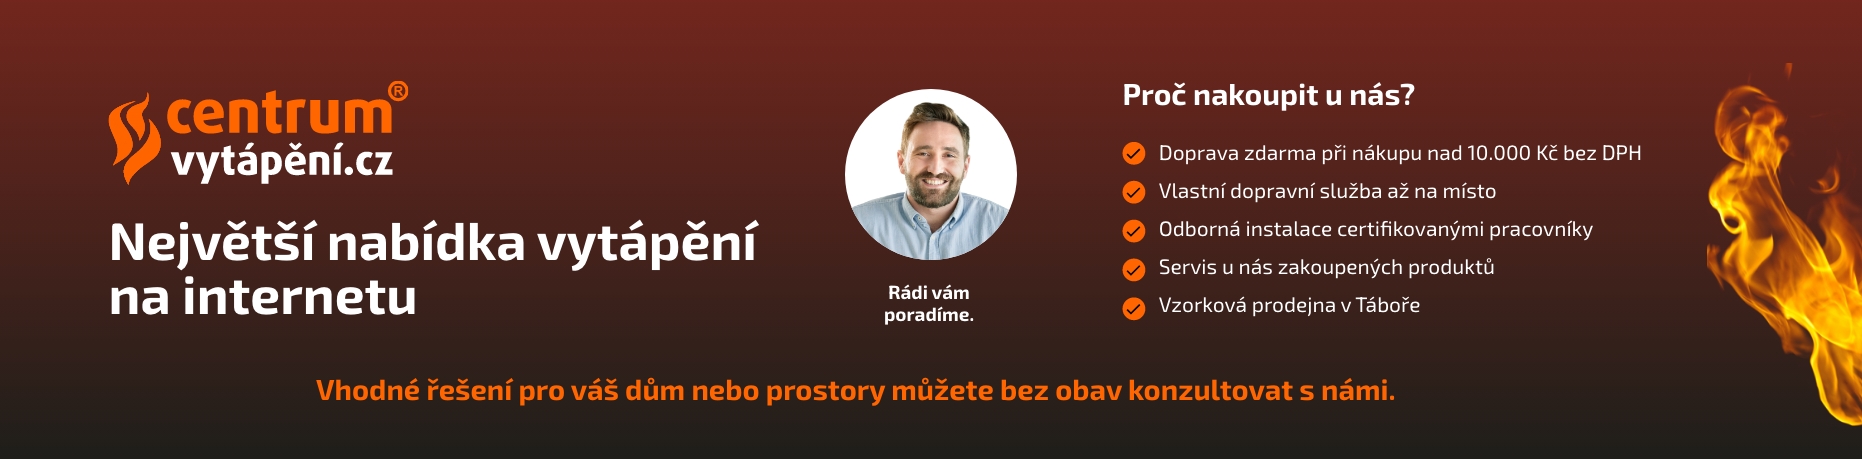 Největší nabídka vytápění na internetu - Centrumvytapeni.cz